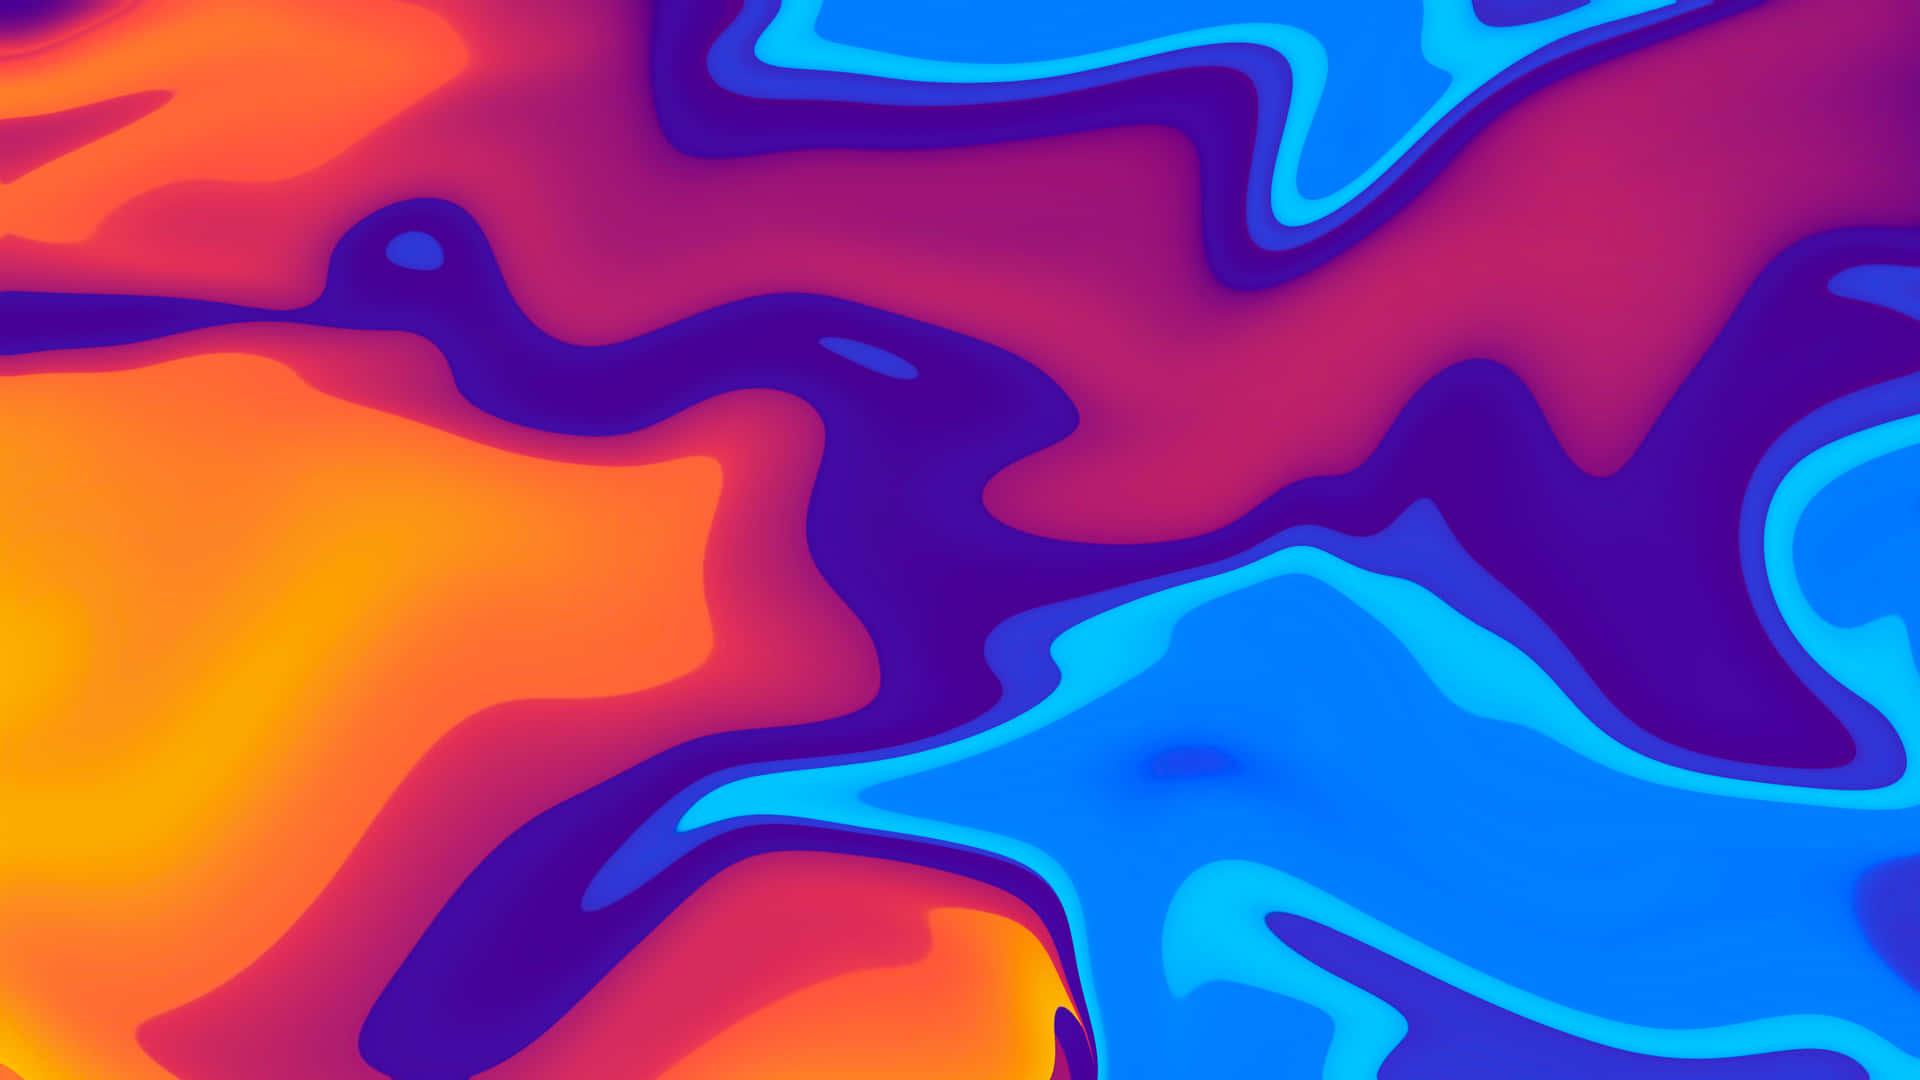 Vibrant Abstract Liquid4 K Art.jpg Wallpaper